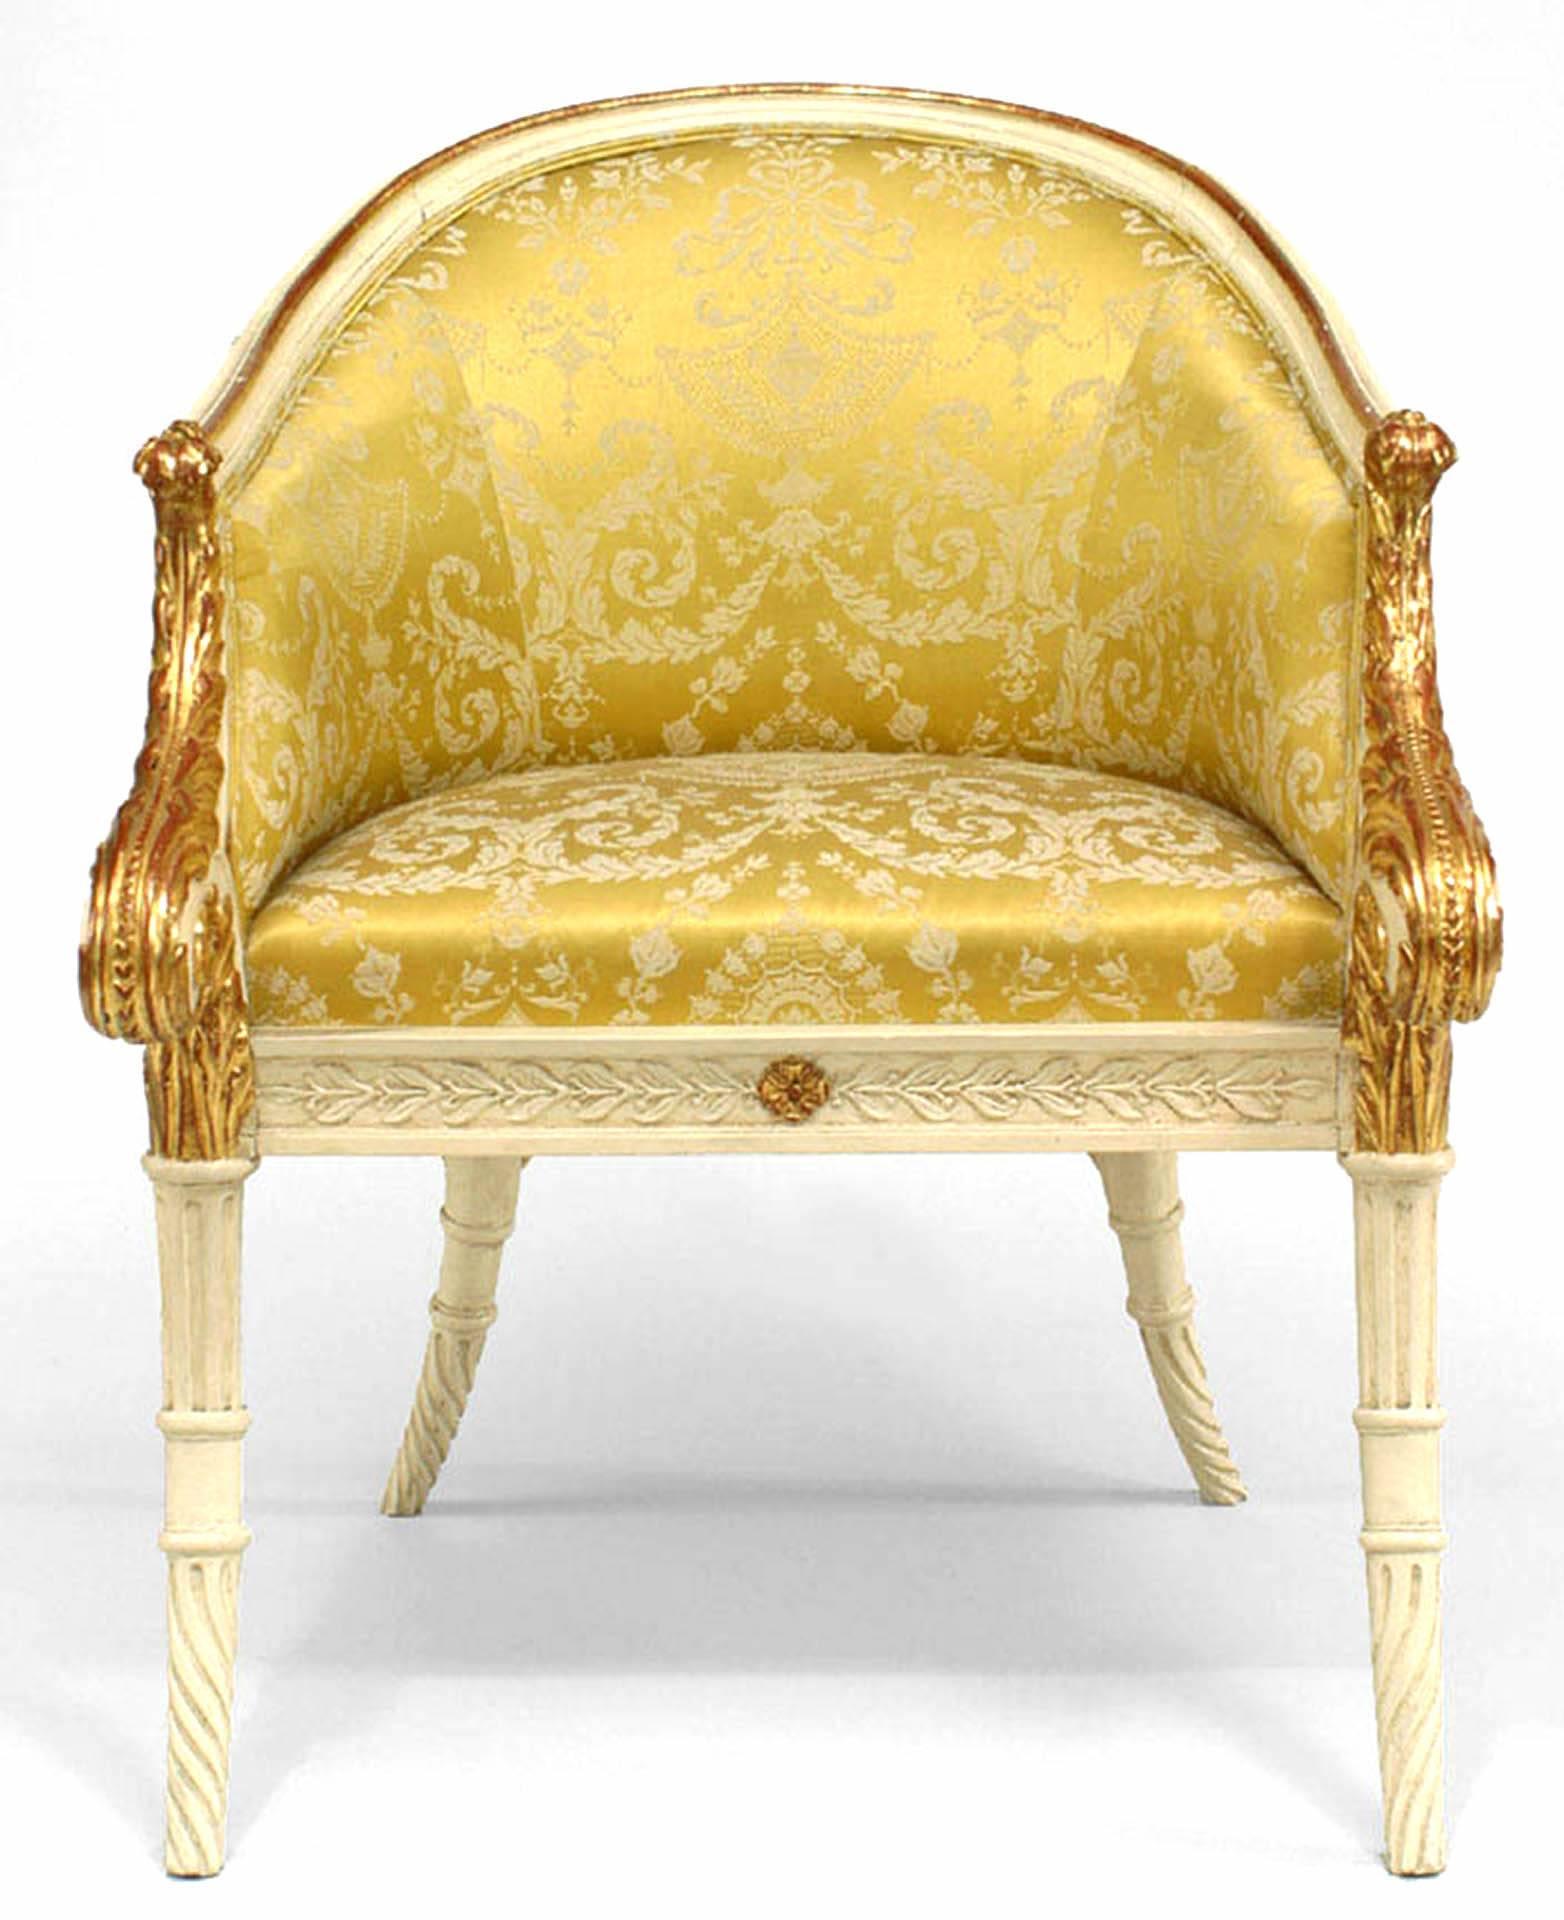 Neoklassizistischer italienischer Sessel mit geschnitzter runder Rückenlehne, weiß und goldfarben lackiert, vorne mit Rollenmuster und Golddamastpolsterung (19. Jahrhundert).
 